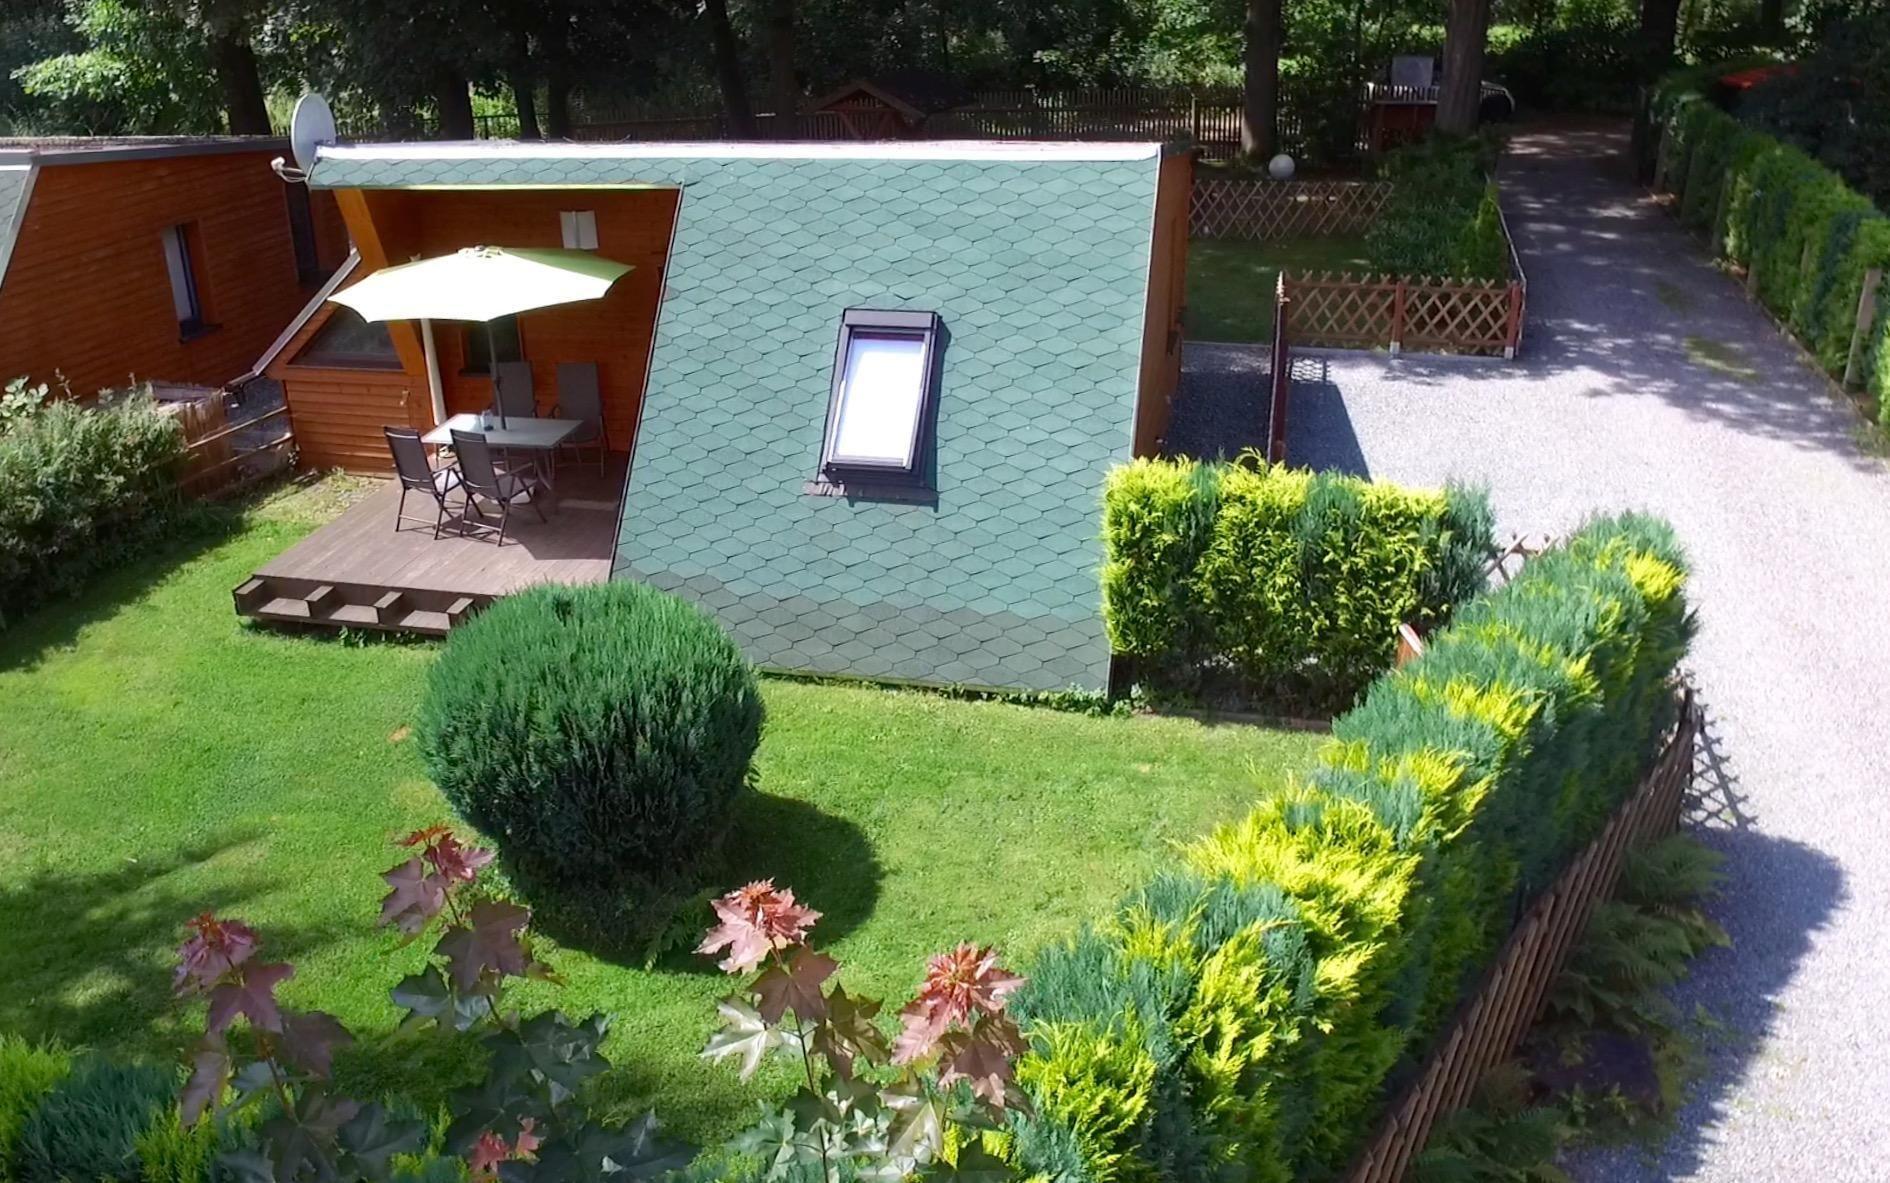 Kleines, modern eingerichtetes Ferienhaus mit Terr Ferienhaus in Deutschland